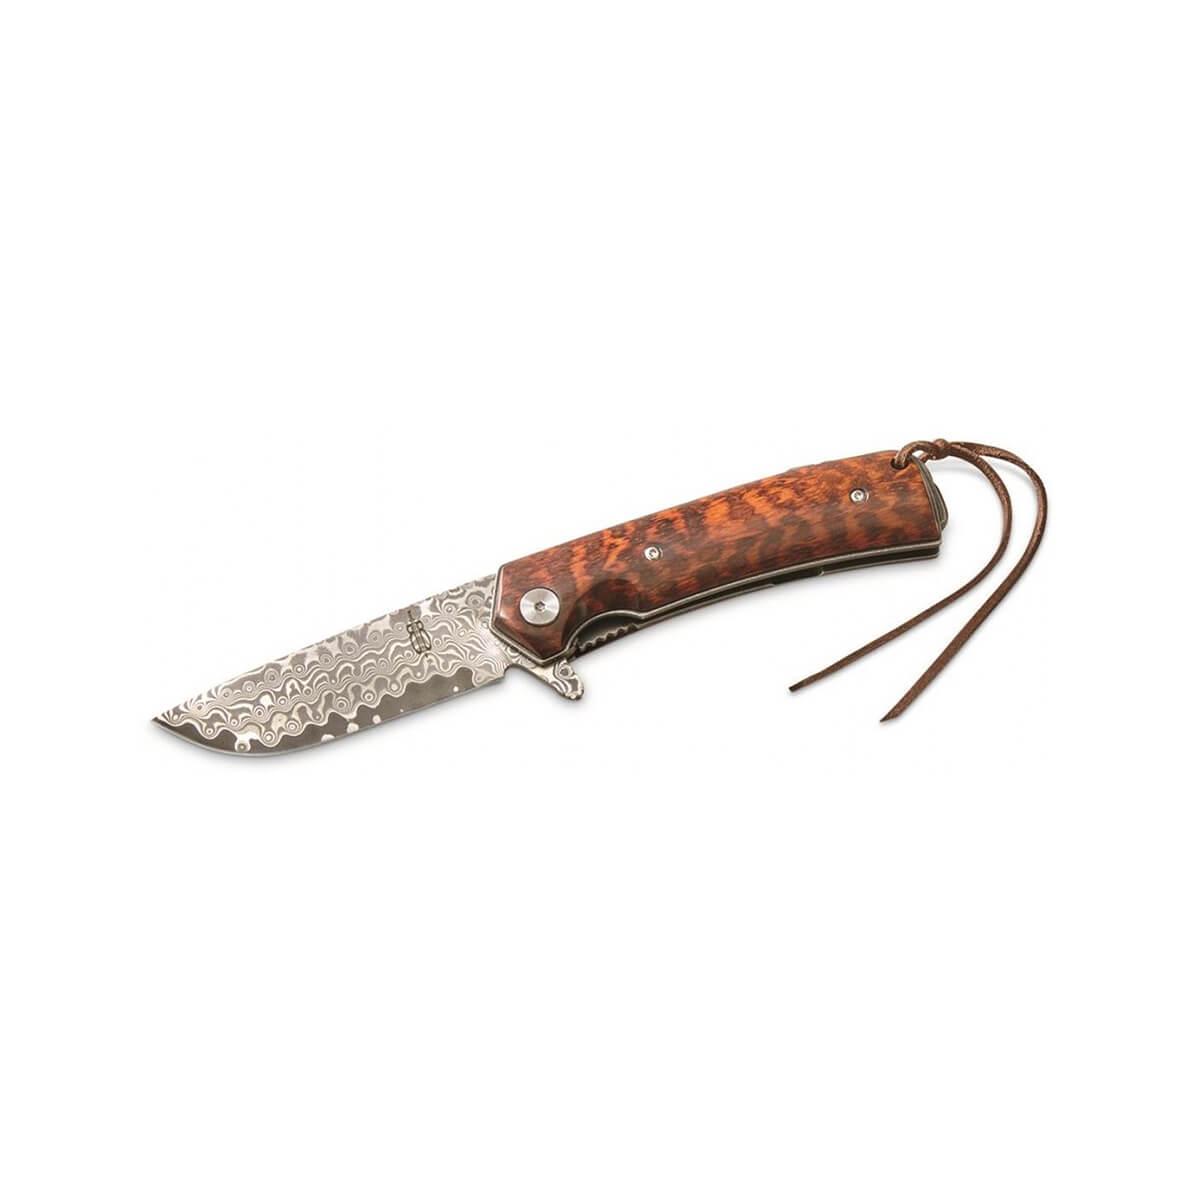  Snakewood Flipper Damascus Knife